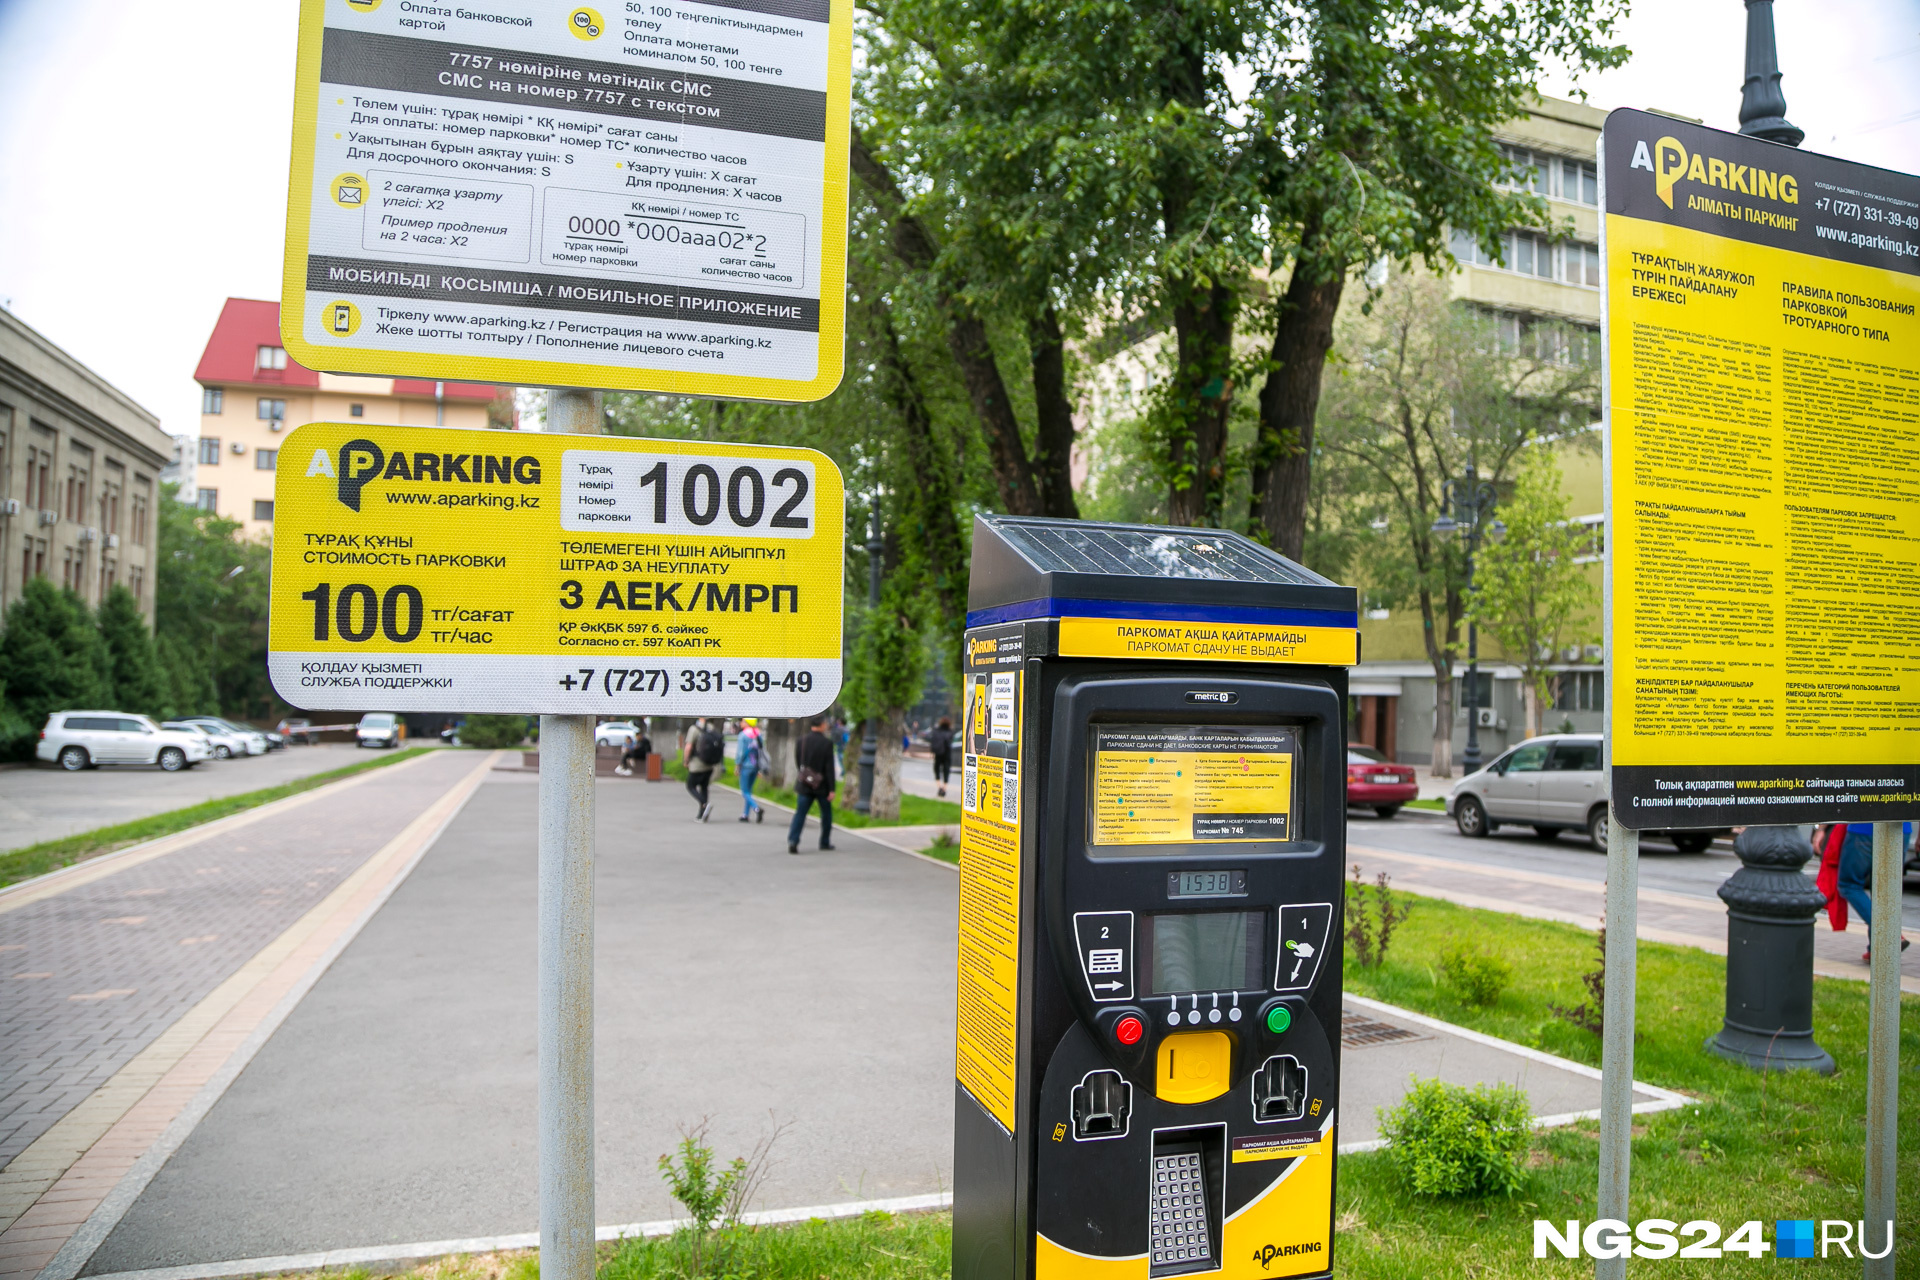 В отличии от Красноярска, здесь вполне работоспособна система платных парковок. Стоимость часа — примерно 20 рублей в час. За неоплату
штраф около 1300 рублей.